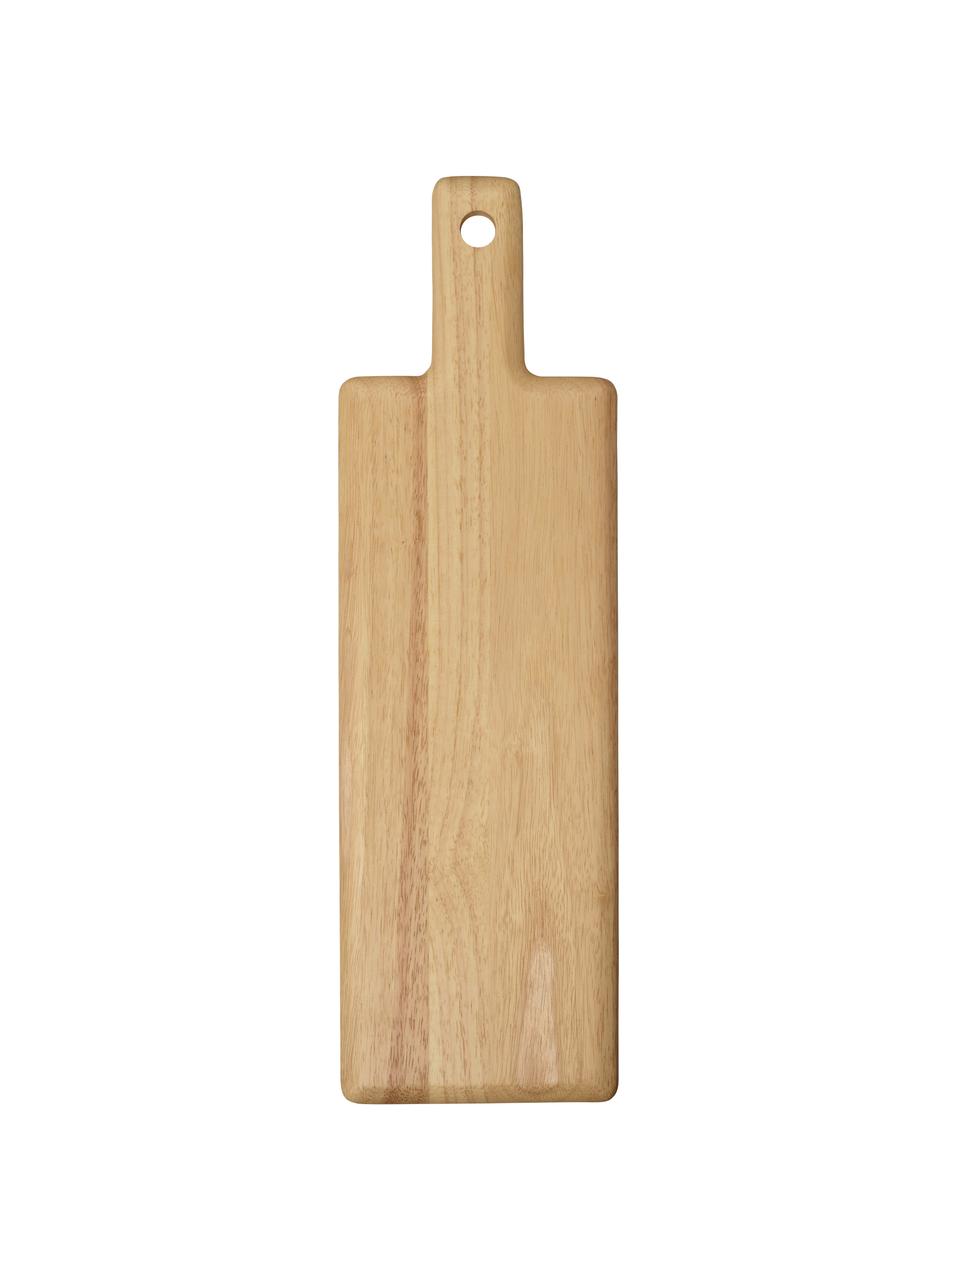 Dřevěné prkénko Wood Light, D 51 cm, Š 15 cm, Béžová